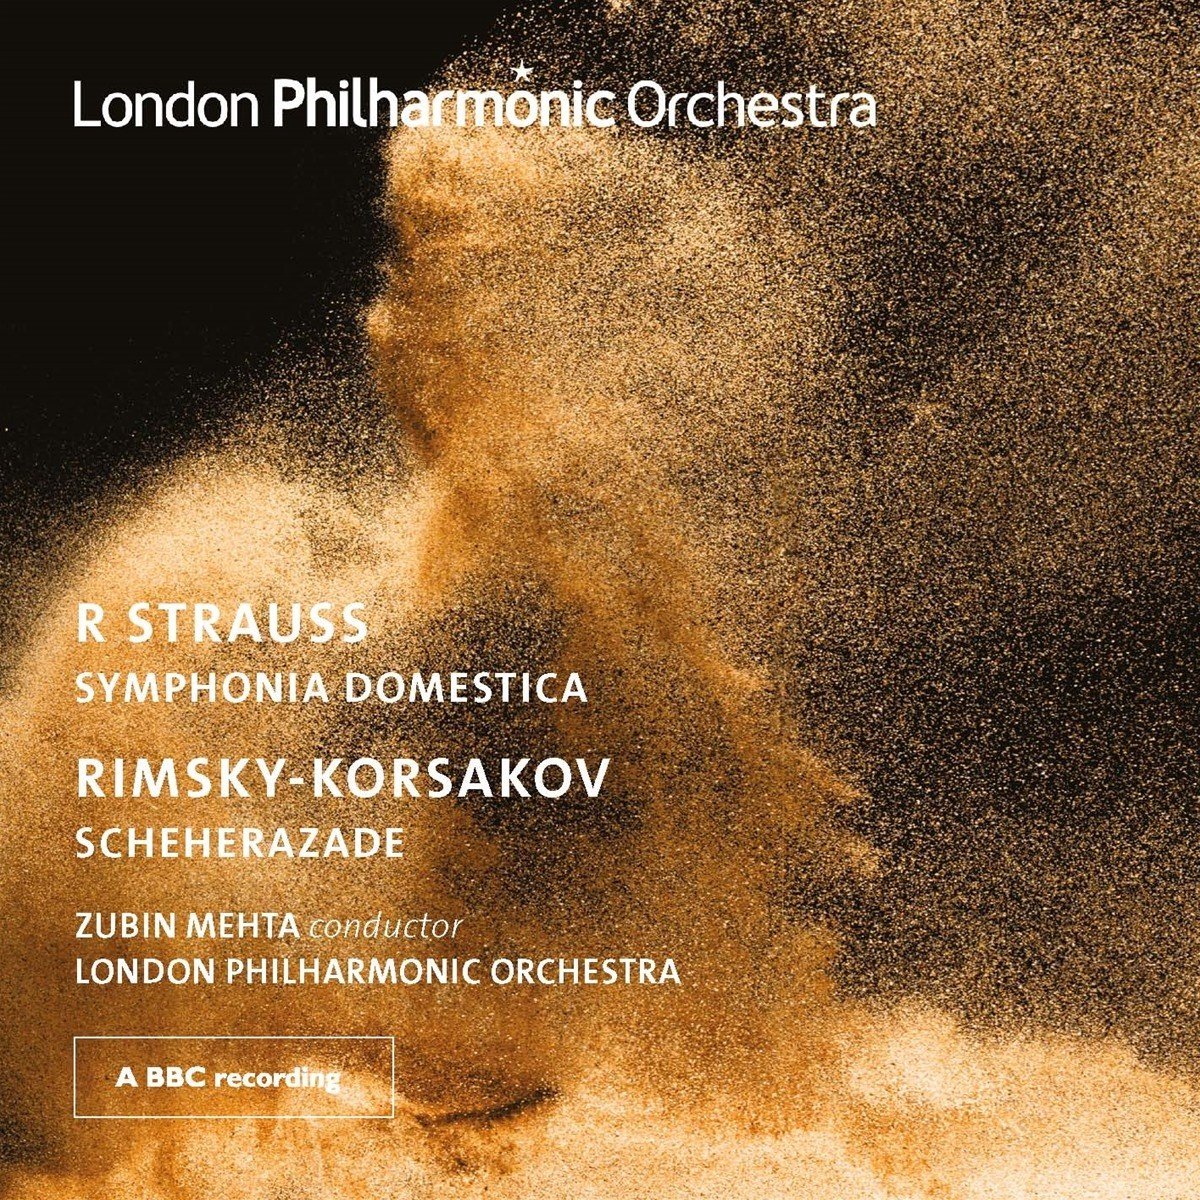 Strauss: Symphonia Domestica. Rimsky-Korsakov: Scheherazade | Richard Strauss, Nikolay Rimsky-Korsakov